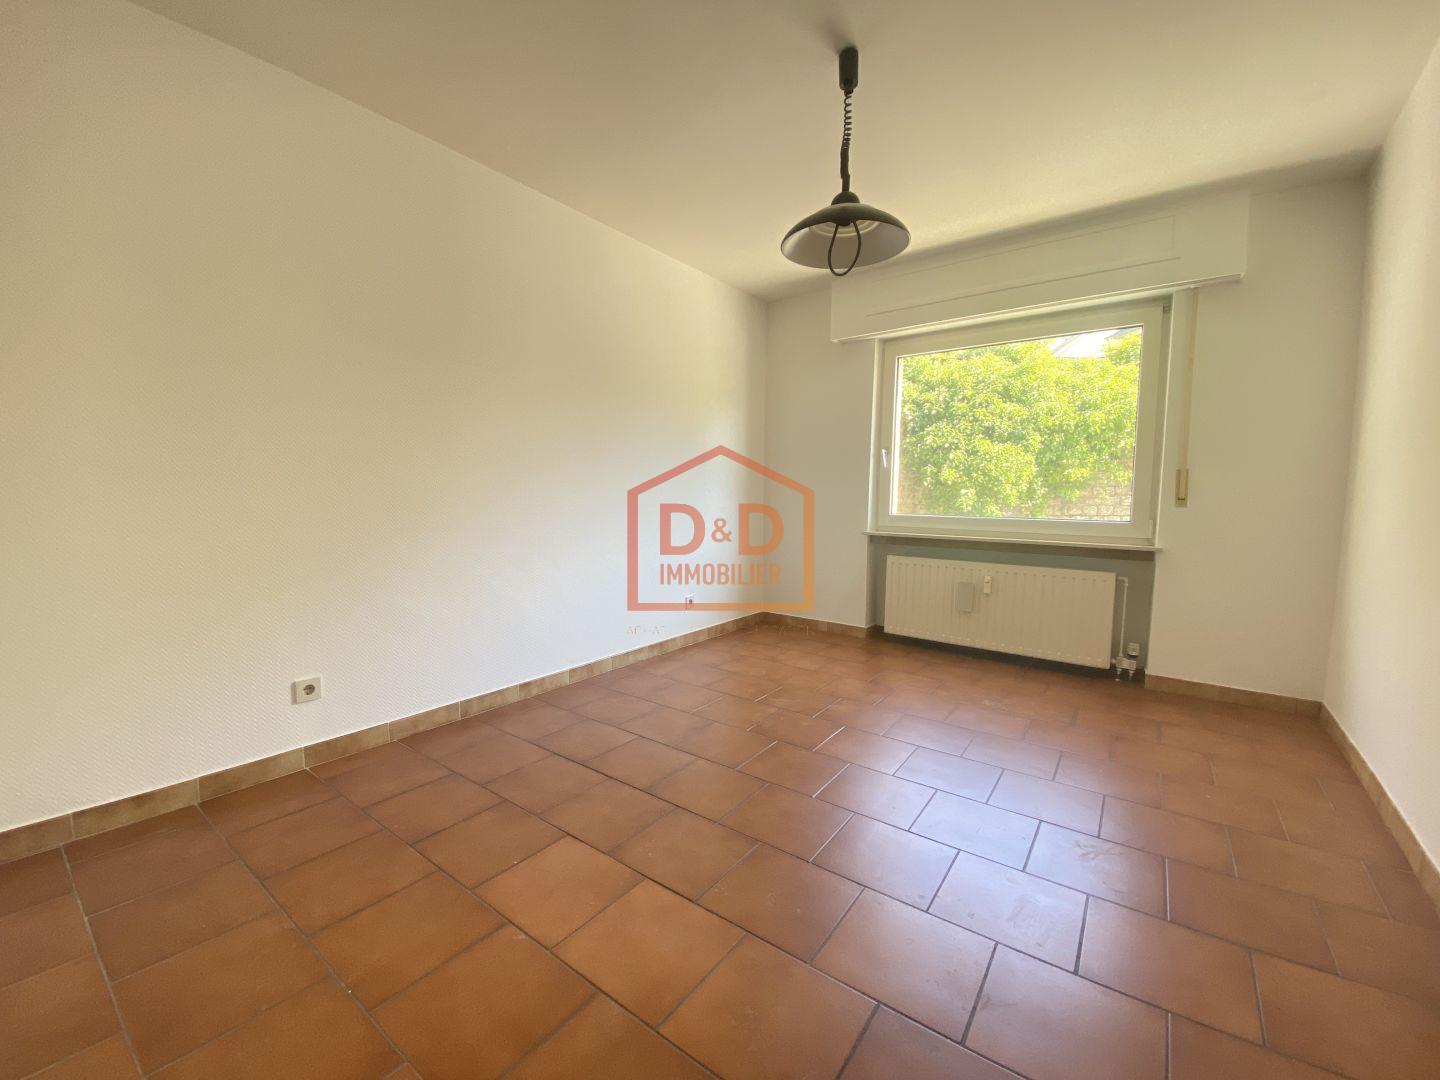 Appartement à Esch-Sur-Alzette, 95 m², 3 chambres, 2 salles de bain, 1 garage, 629 350 €